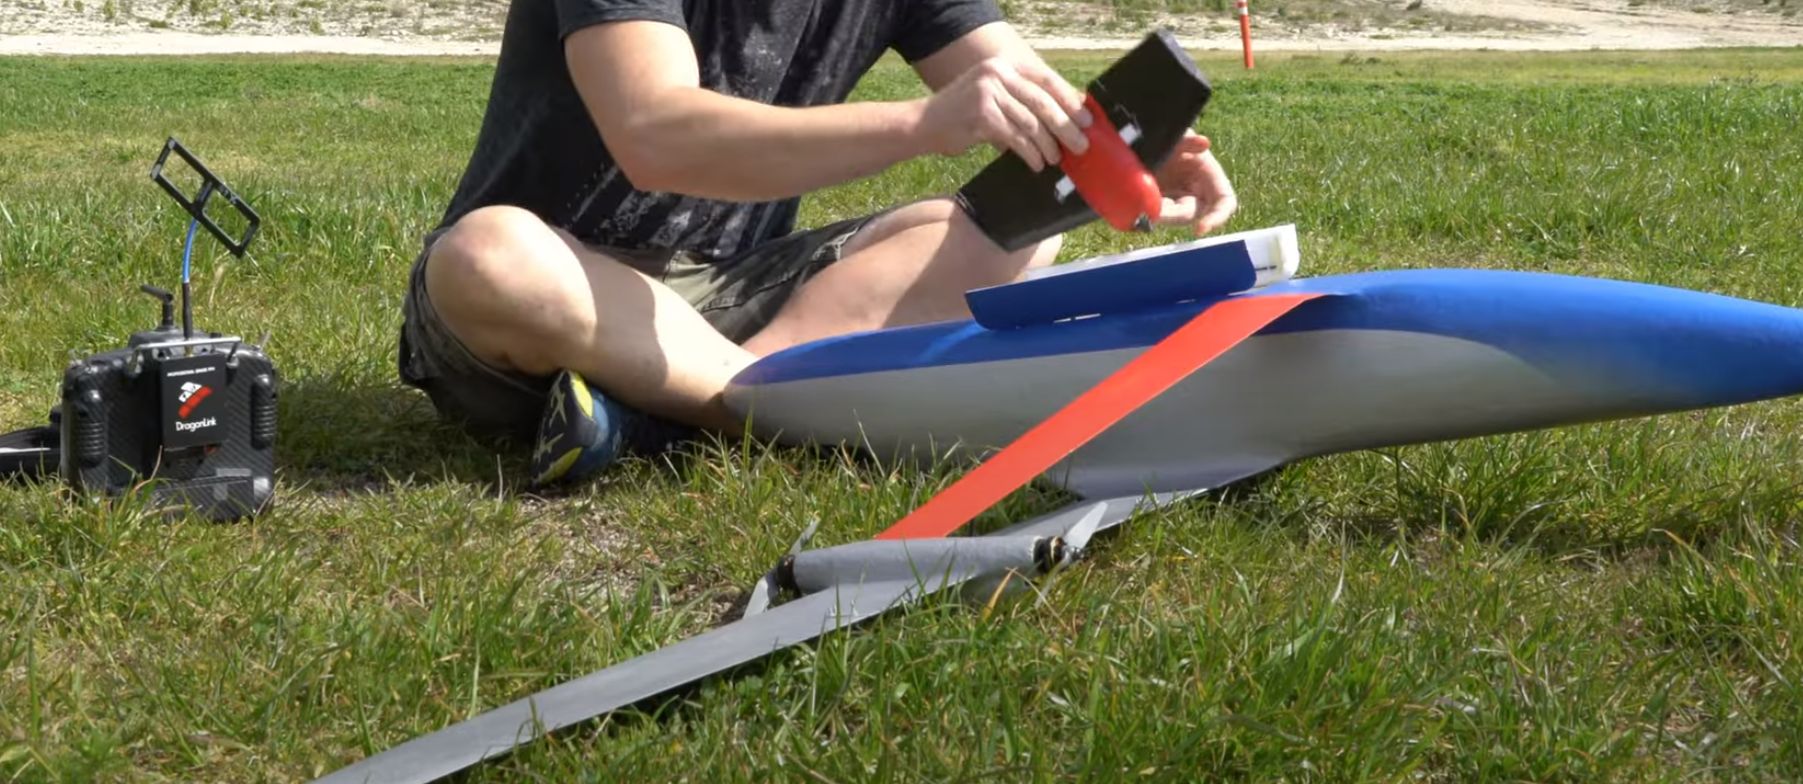 Construir um aeromodelo com um suporte de engrenagem: sentido ou absurdo?